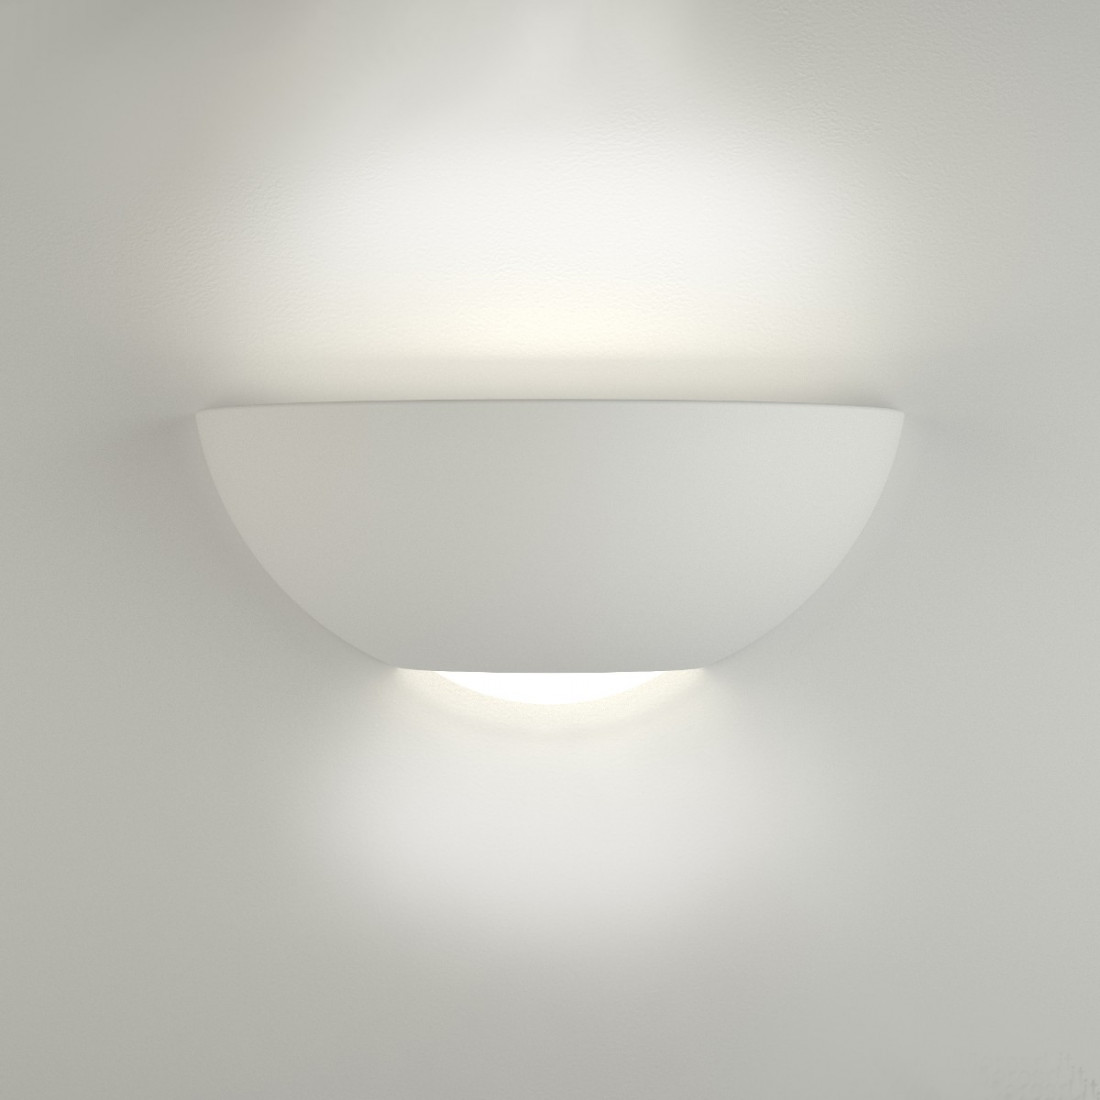 Applique BF-9207 41 E27 LED gesso bianco verniciabile lampada parete biemissione vaschetta interno IP20